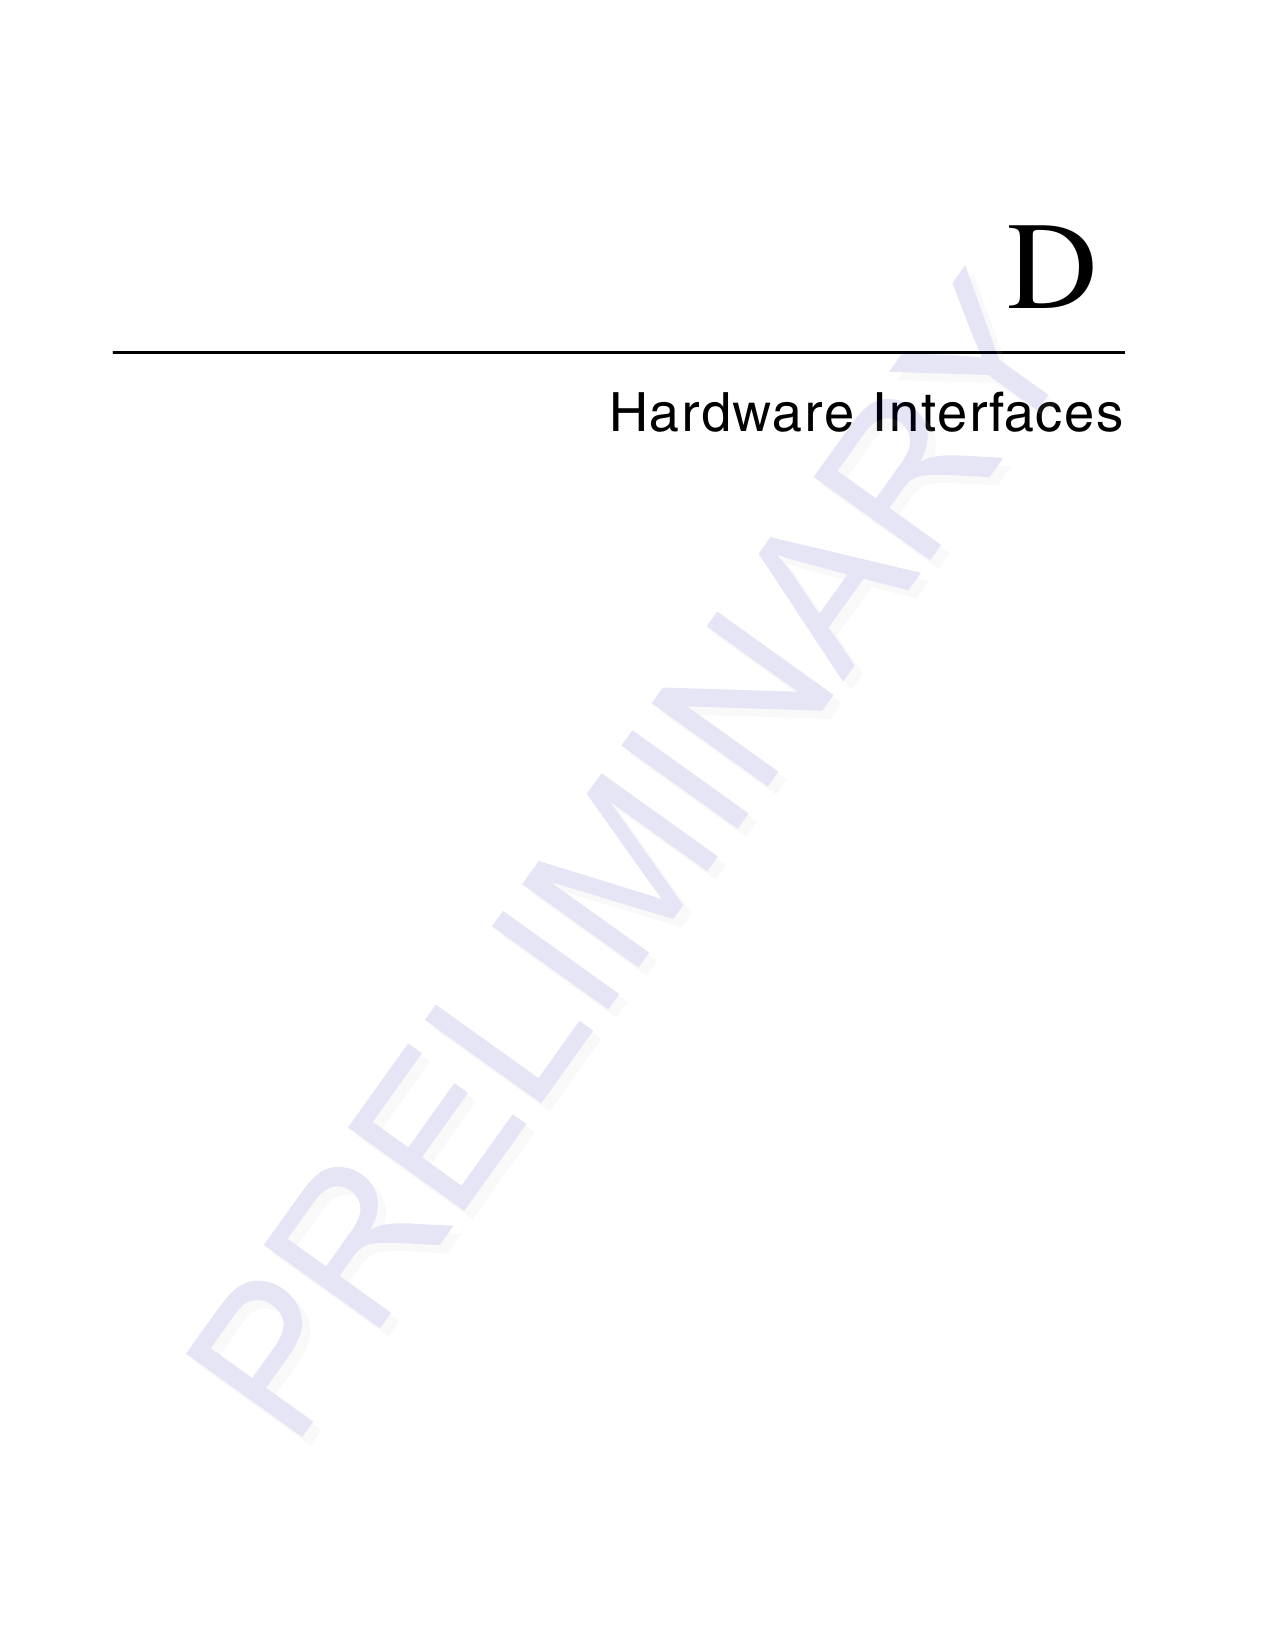 DHardware Interfaces